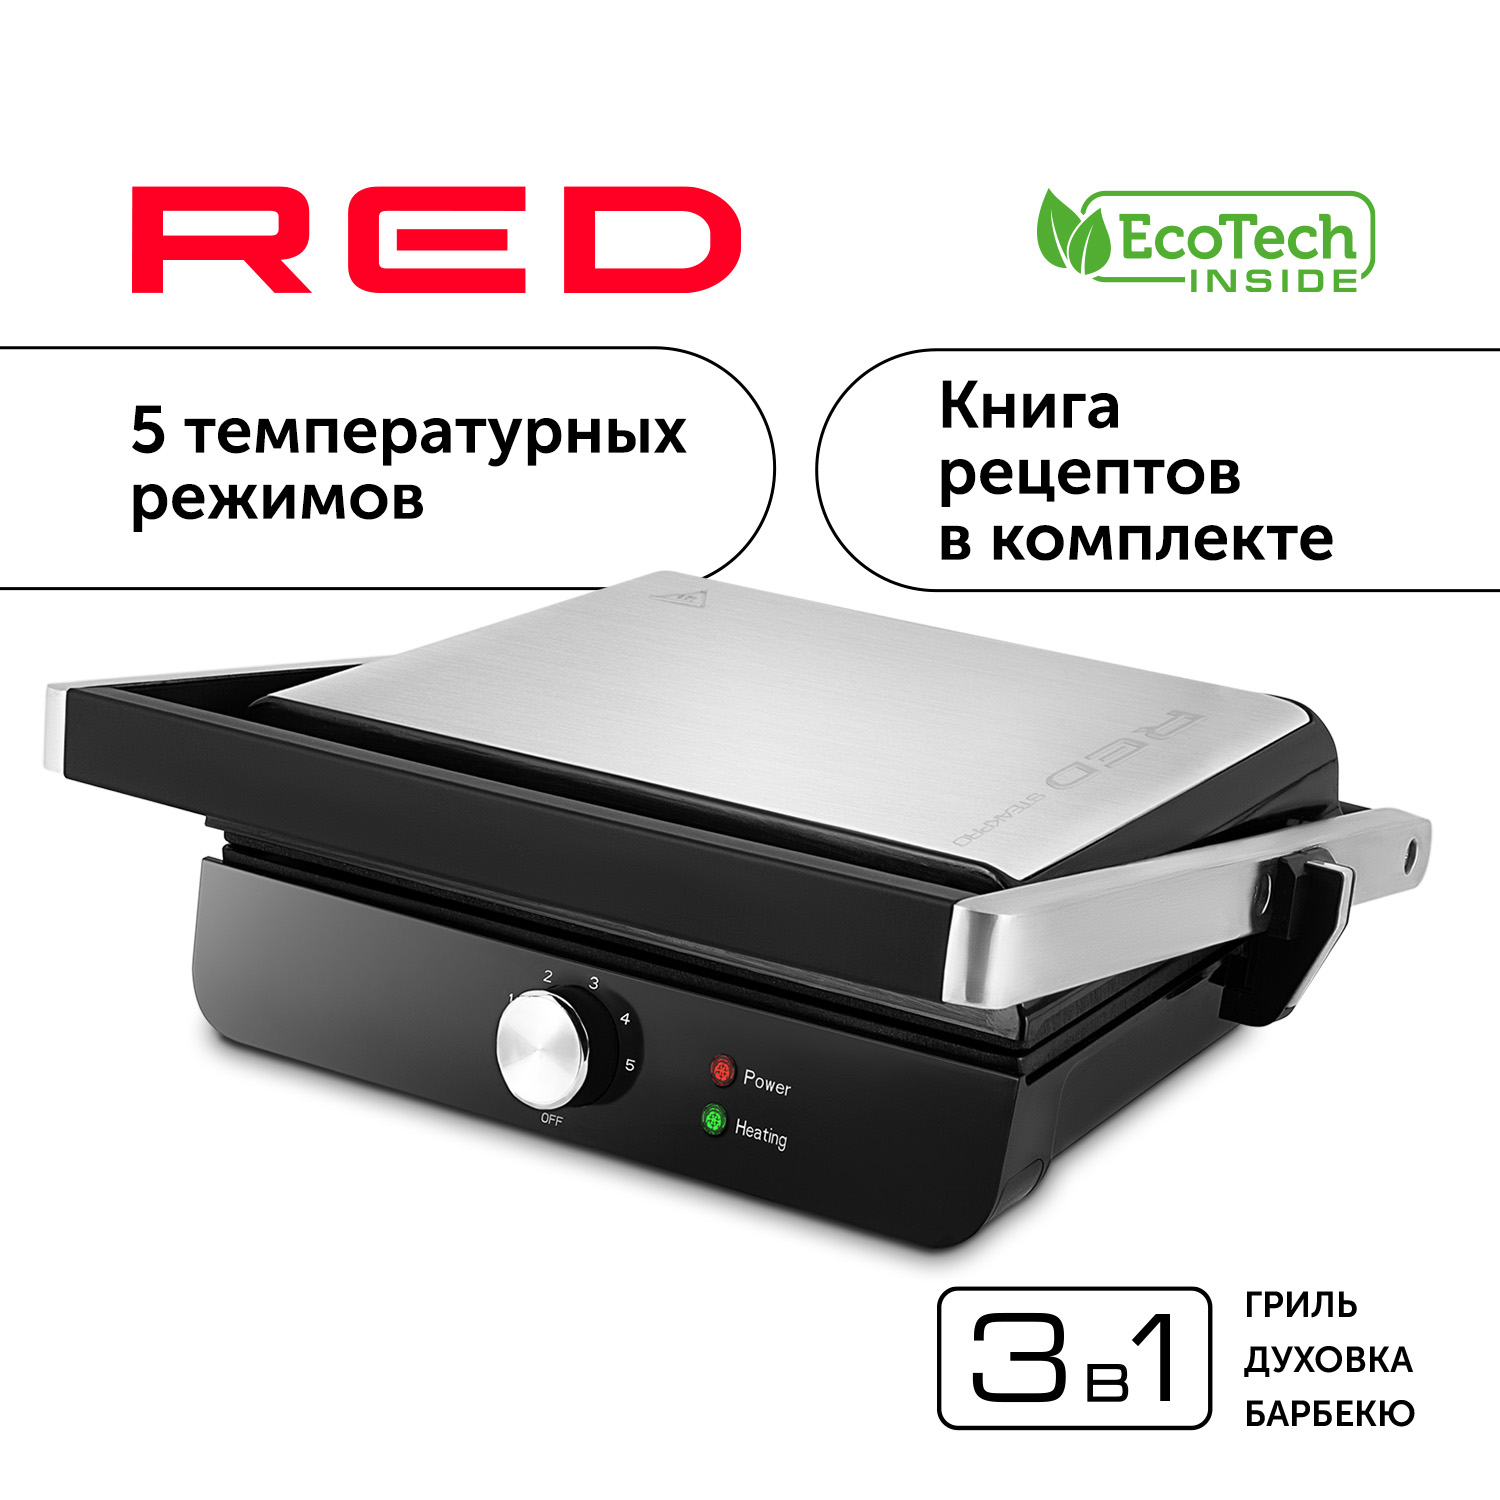 Гриль RED SOLUTION RGM-M815 серебристый, серый, черный гриль red solution rgm m814 серый